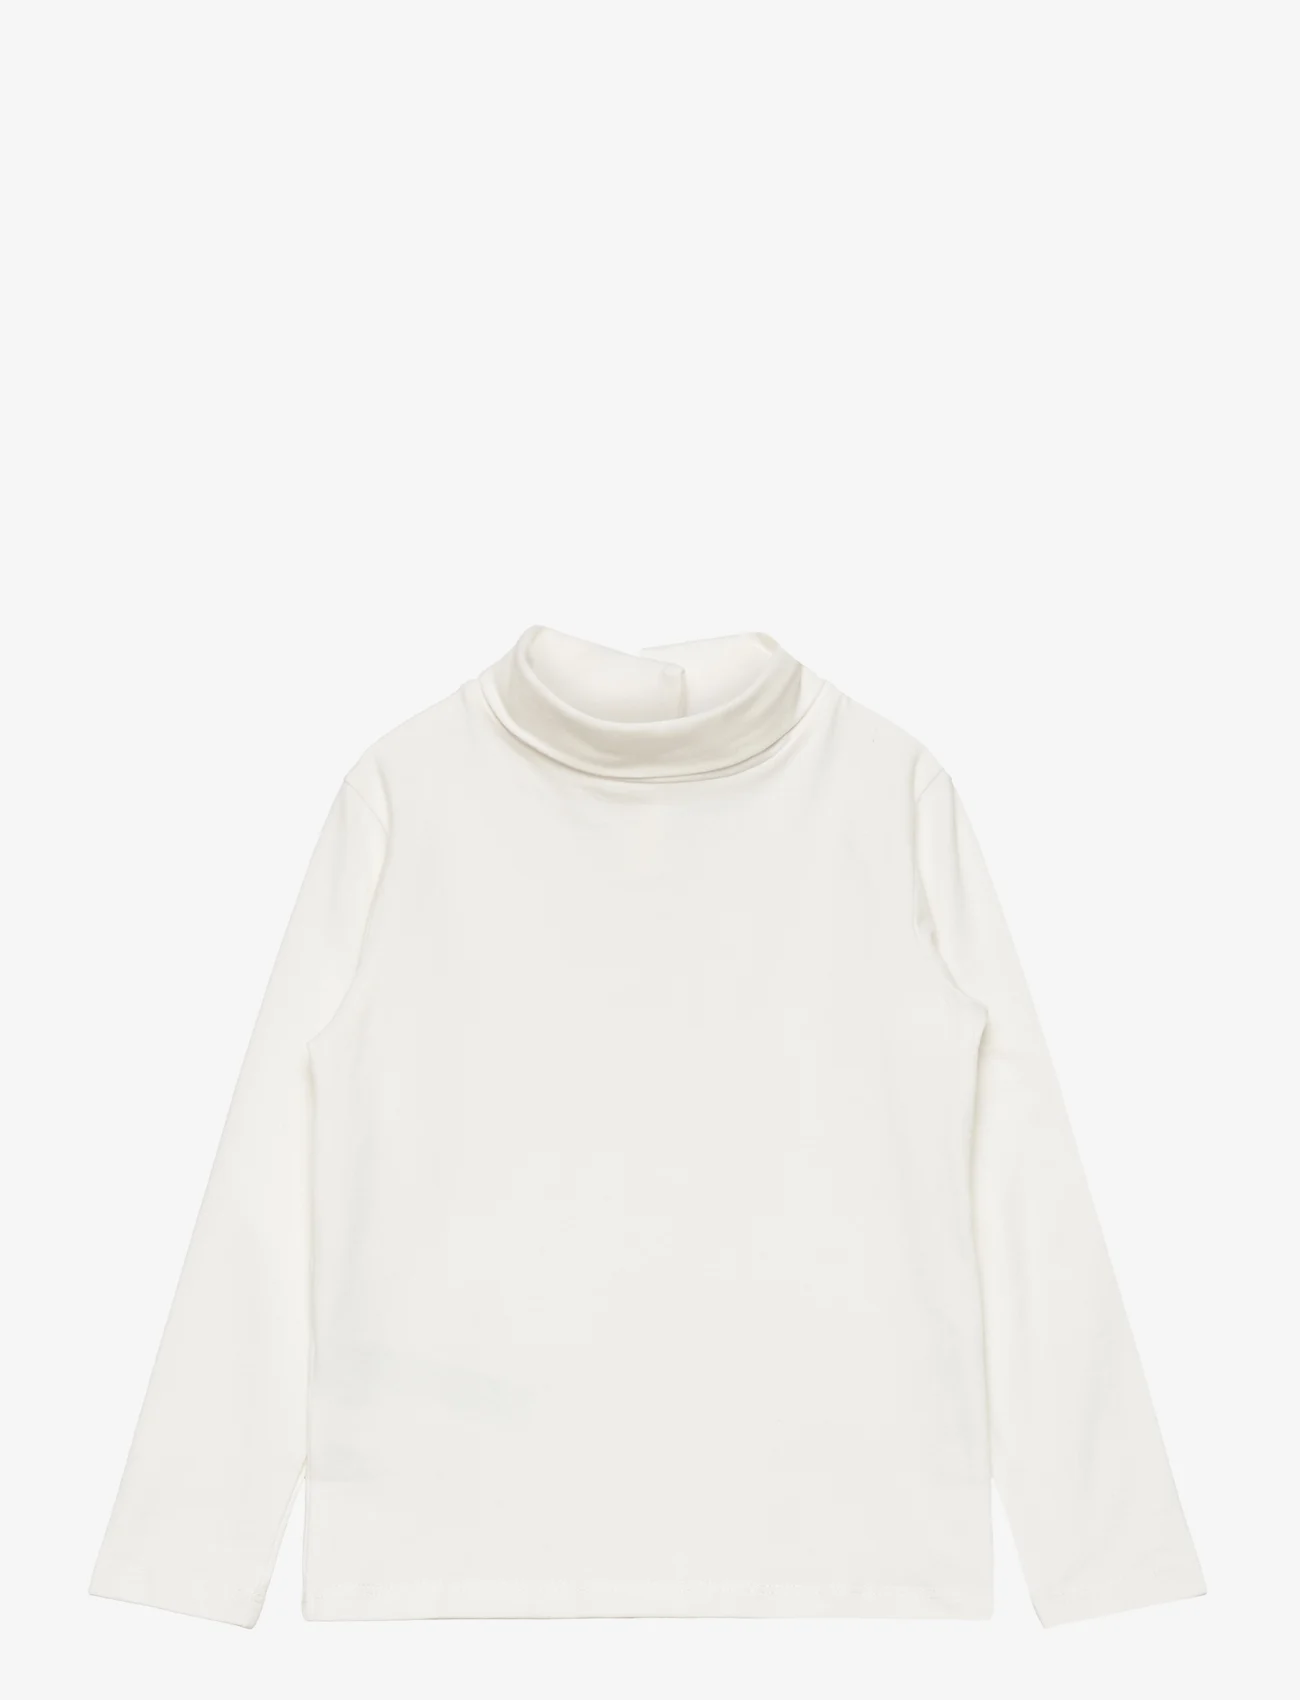 Mango - Turtleneck long-sleeved t-shirt - pologenser - natural white - 0